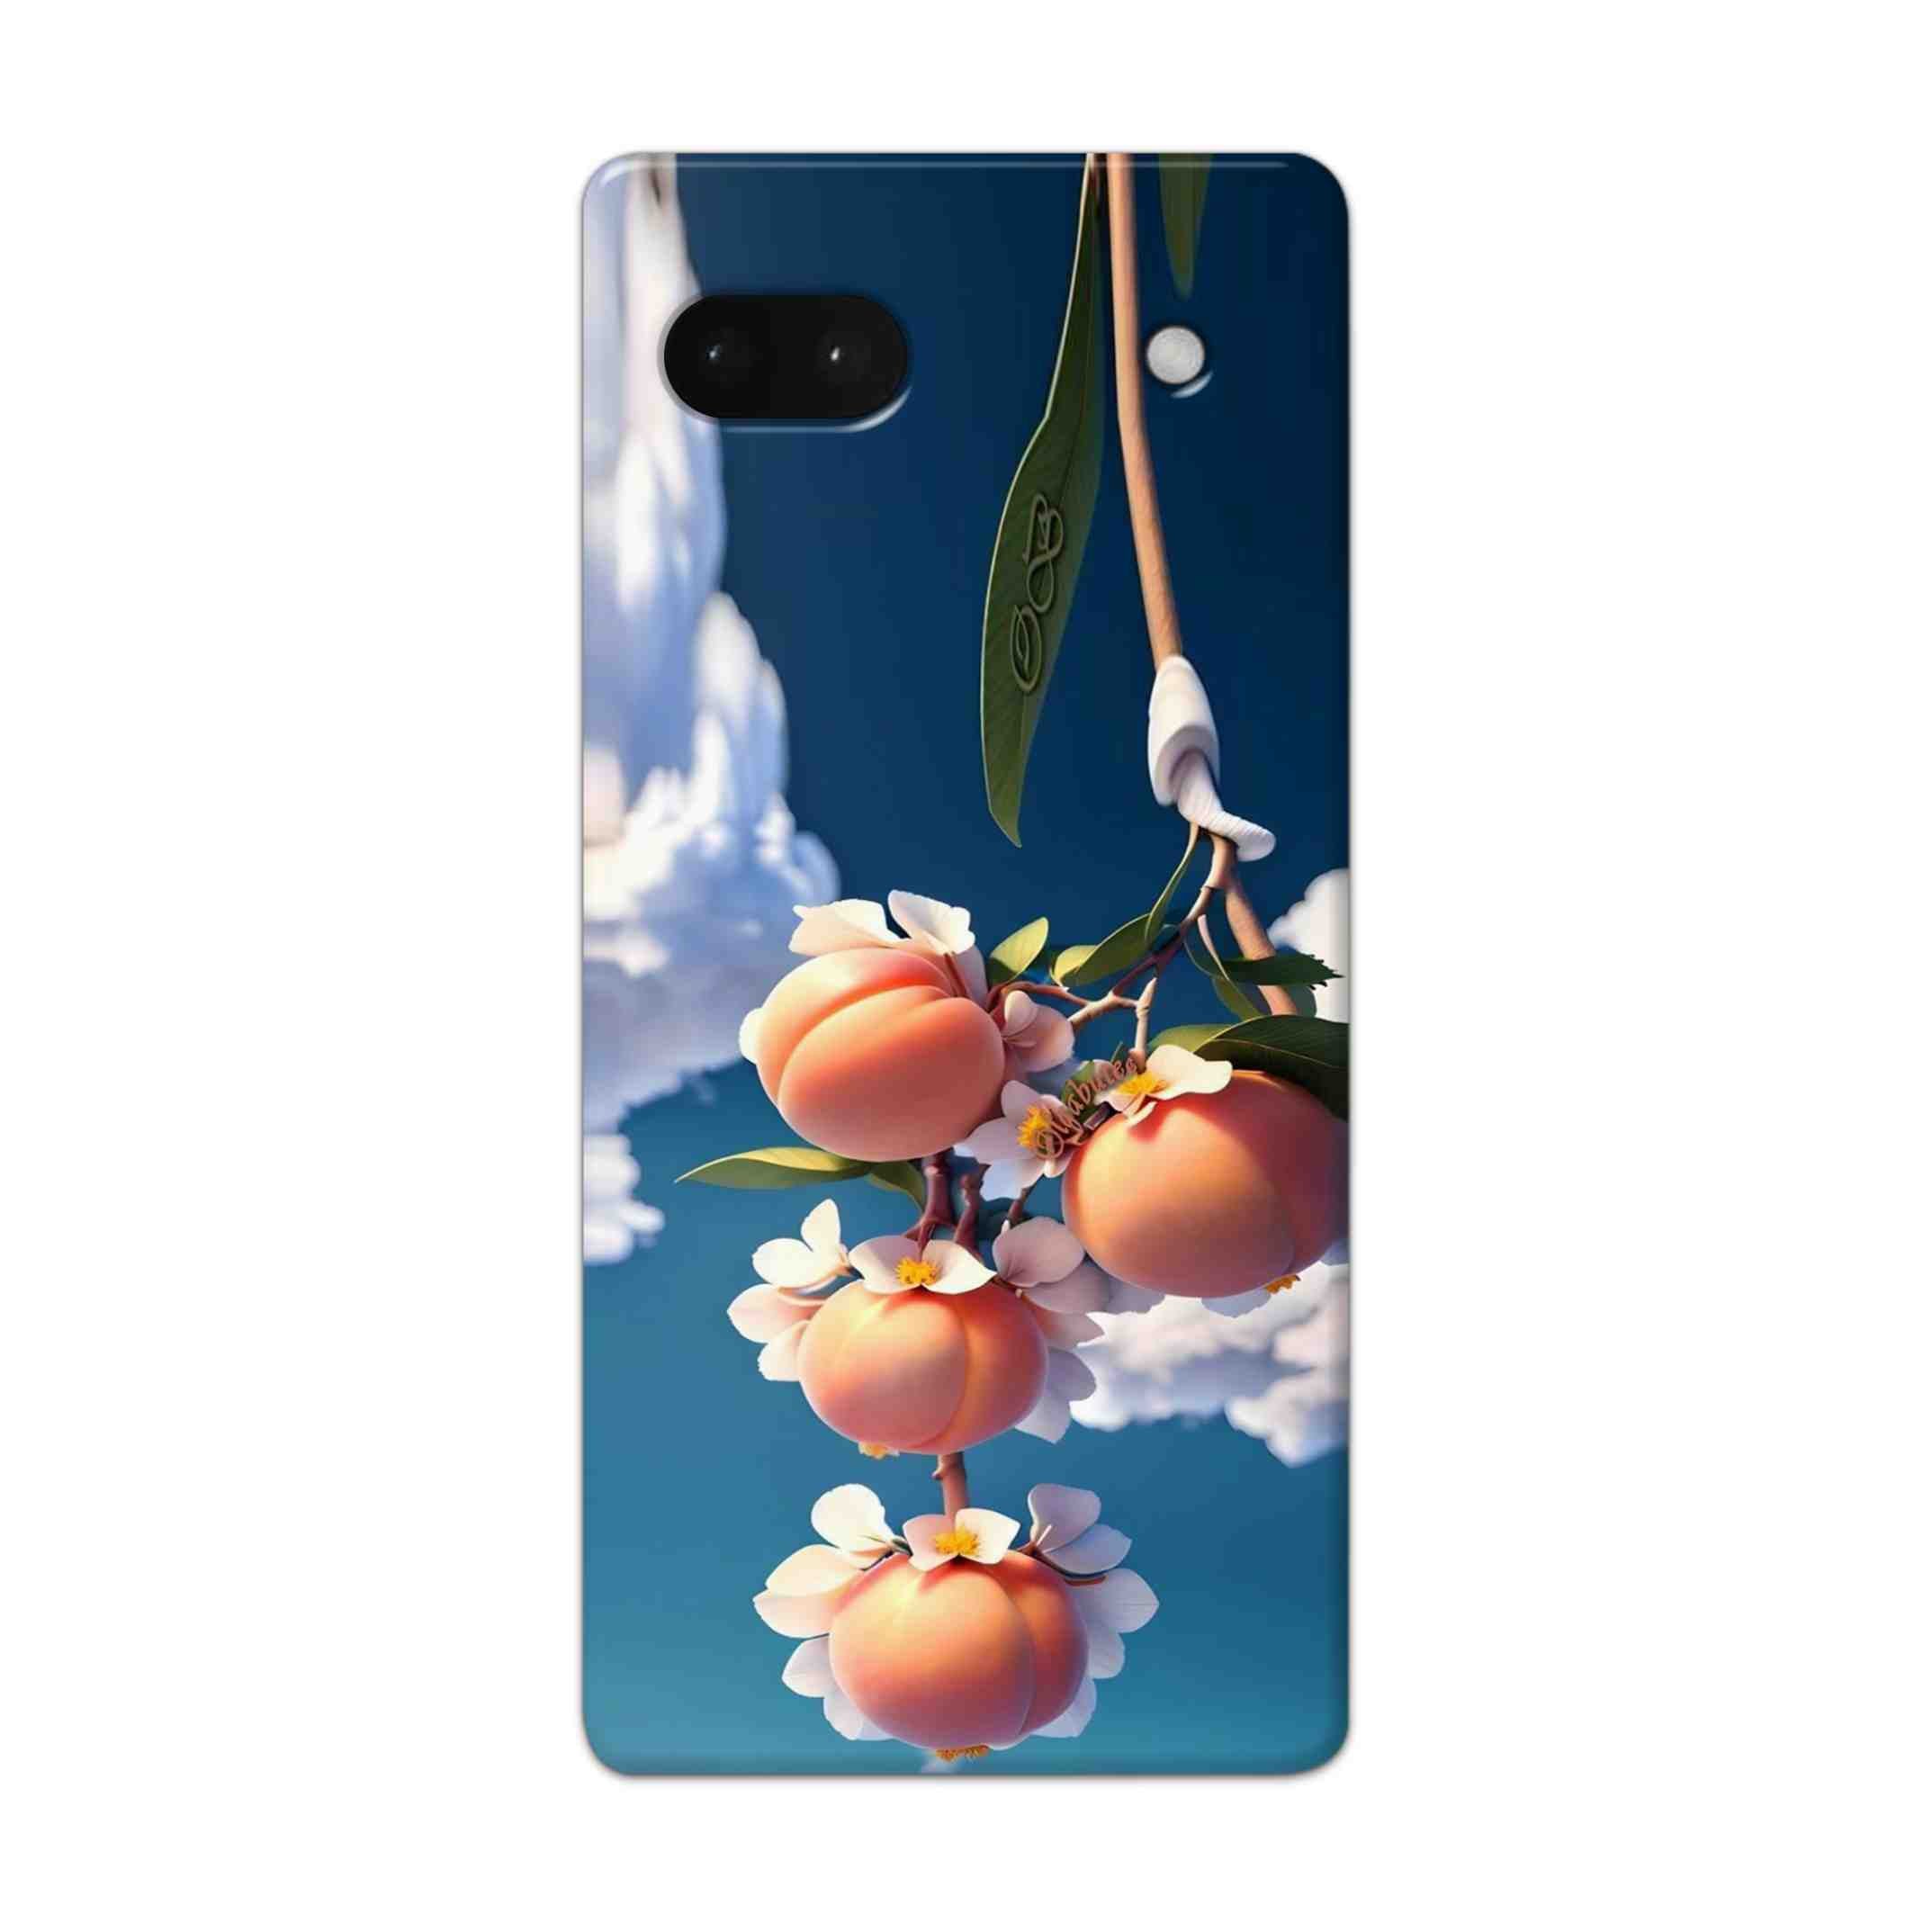 Buy Fruit Hard Back Mobile Phone Case Cover For Google Pixel 6a Online